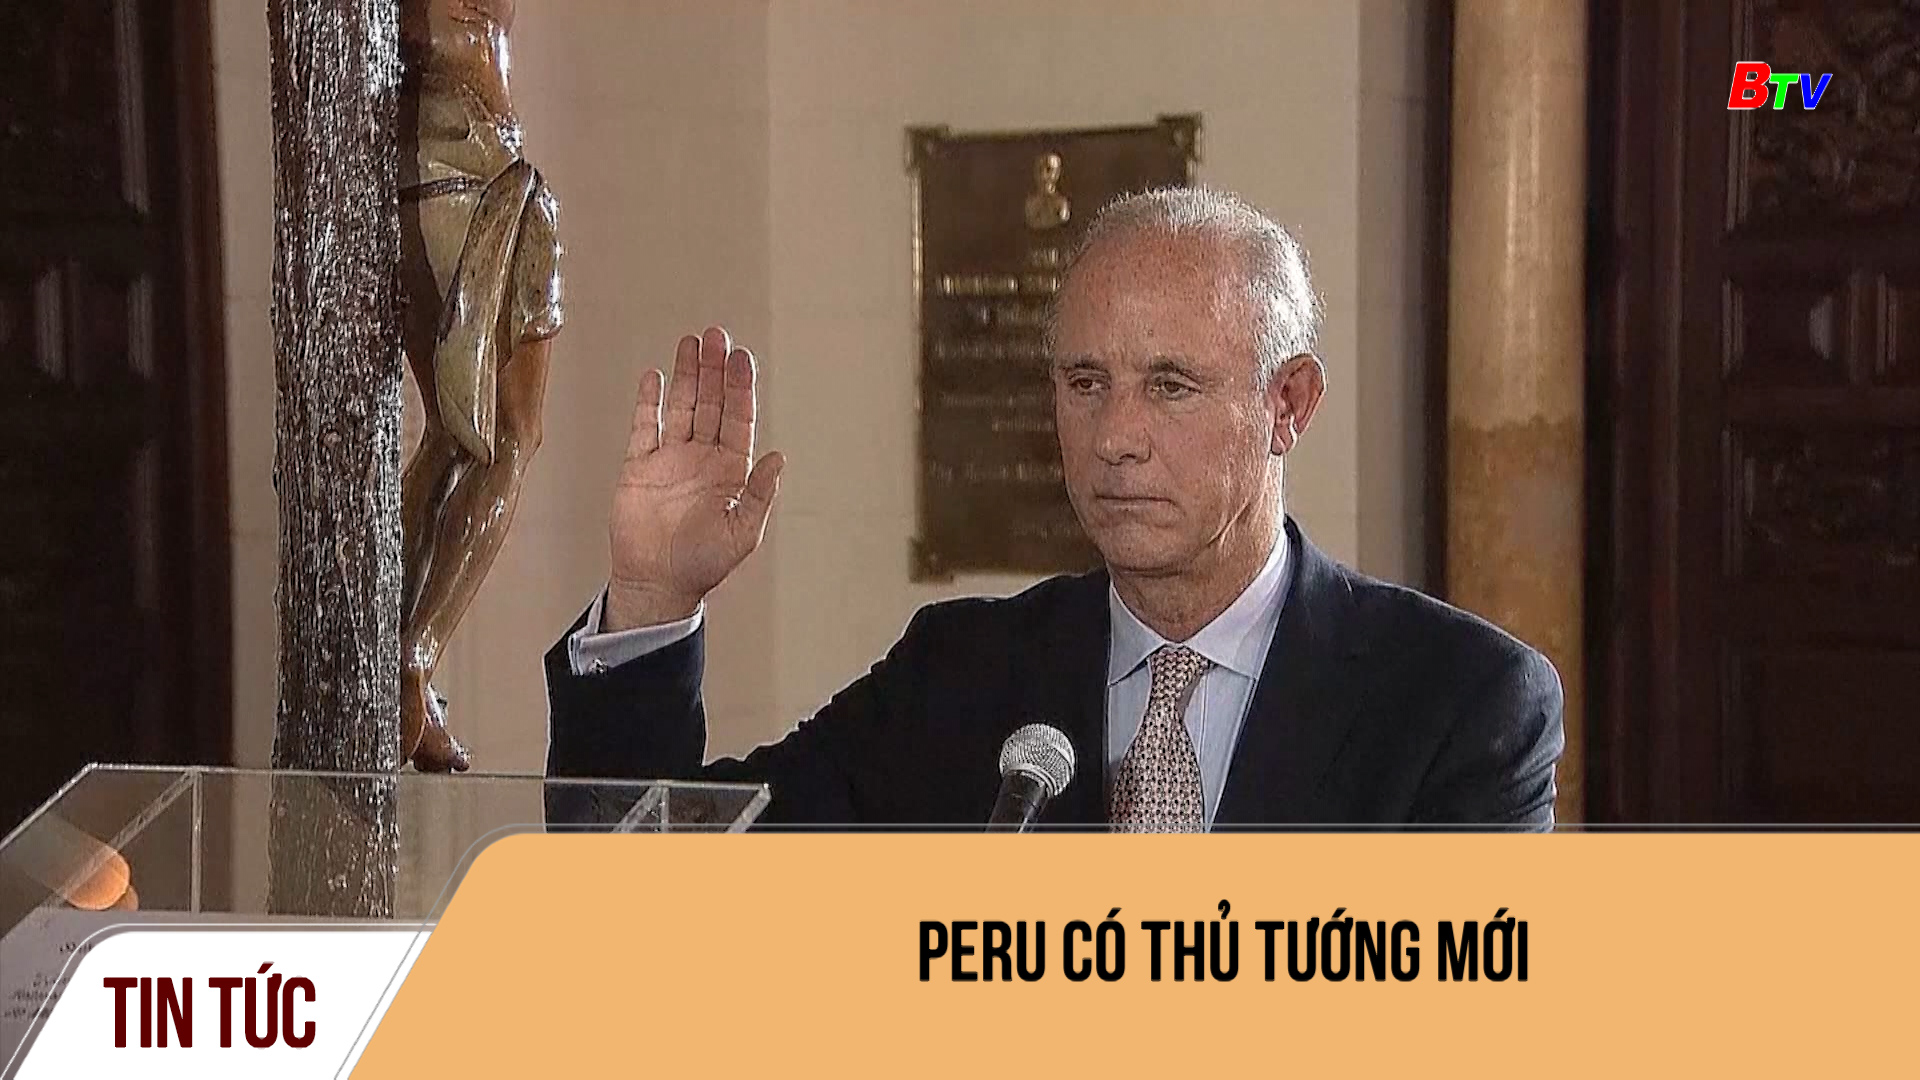 Peru có thủ tướng mới	